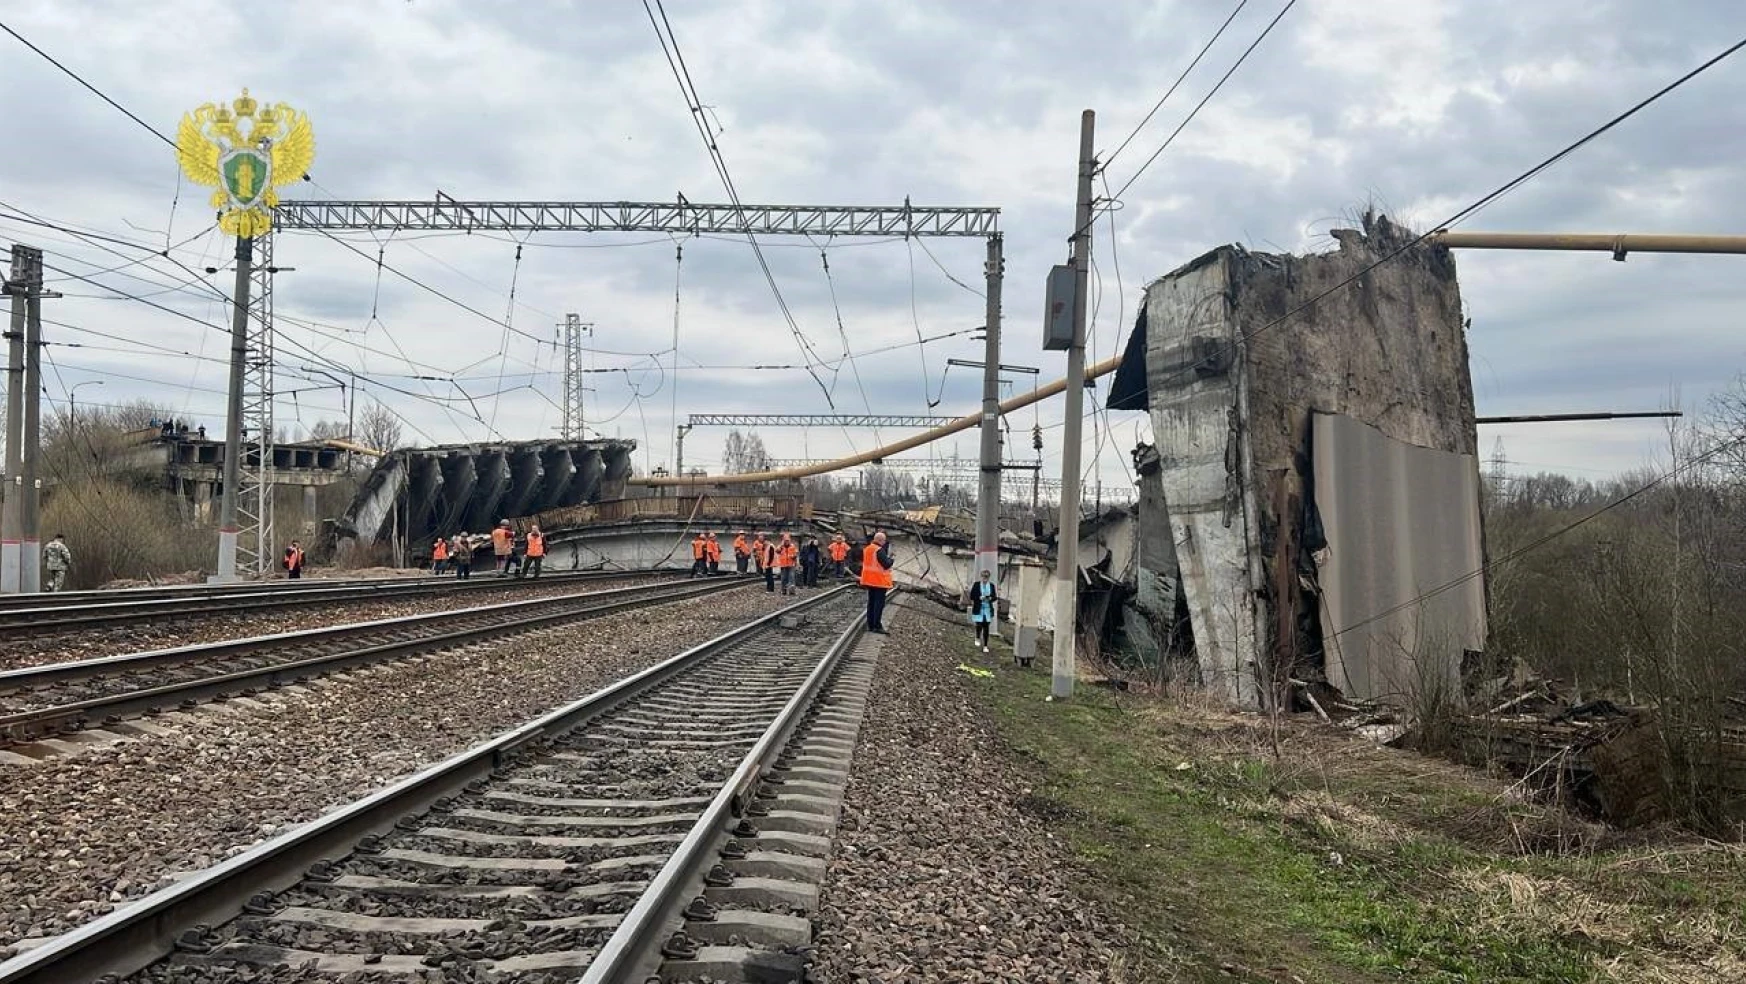 Rusya'da demiryolu üzerindeki köprü çöktü: 1 ölü, 5 yaralı